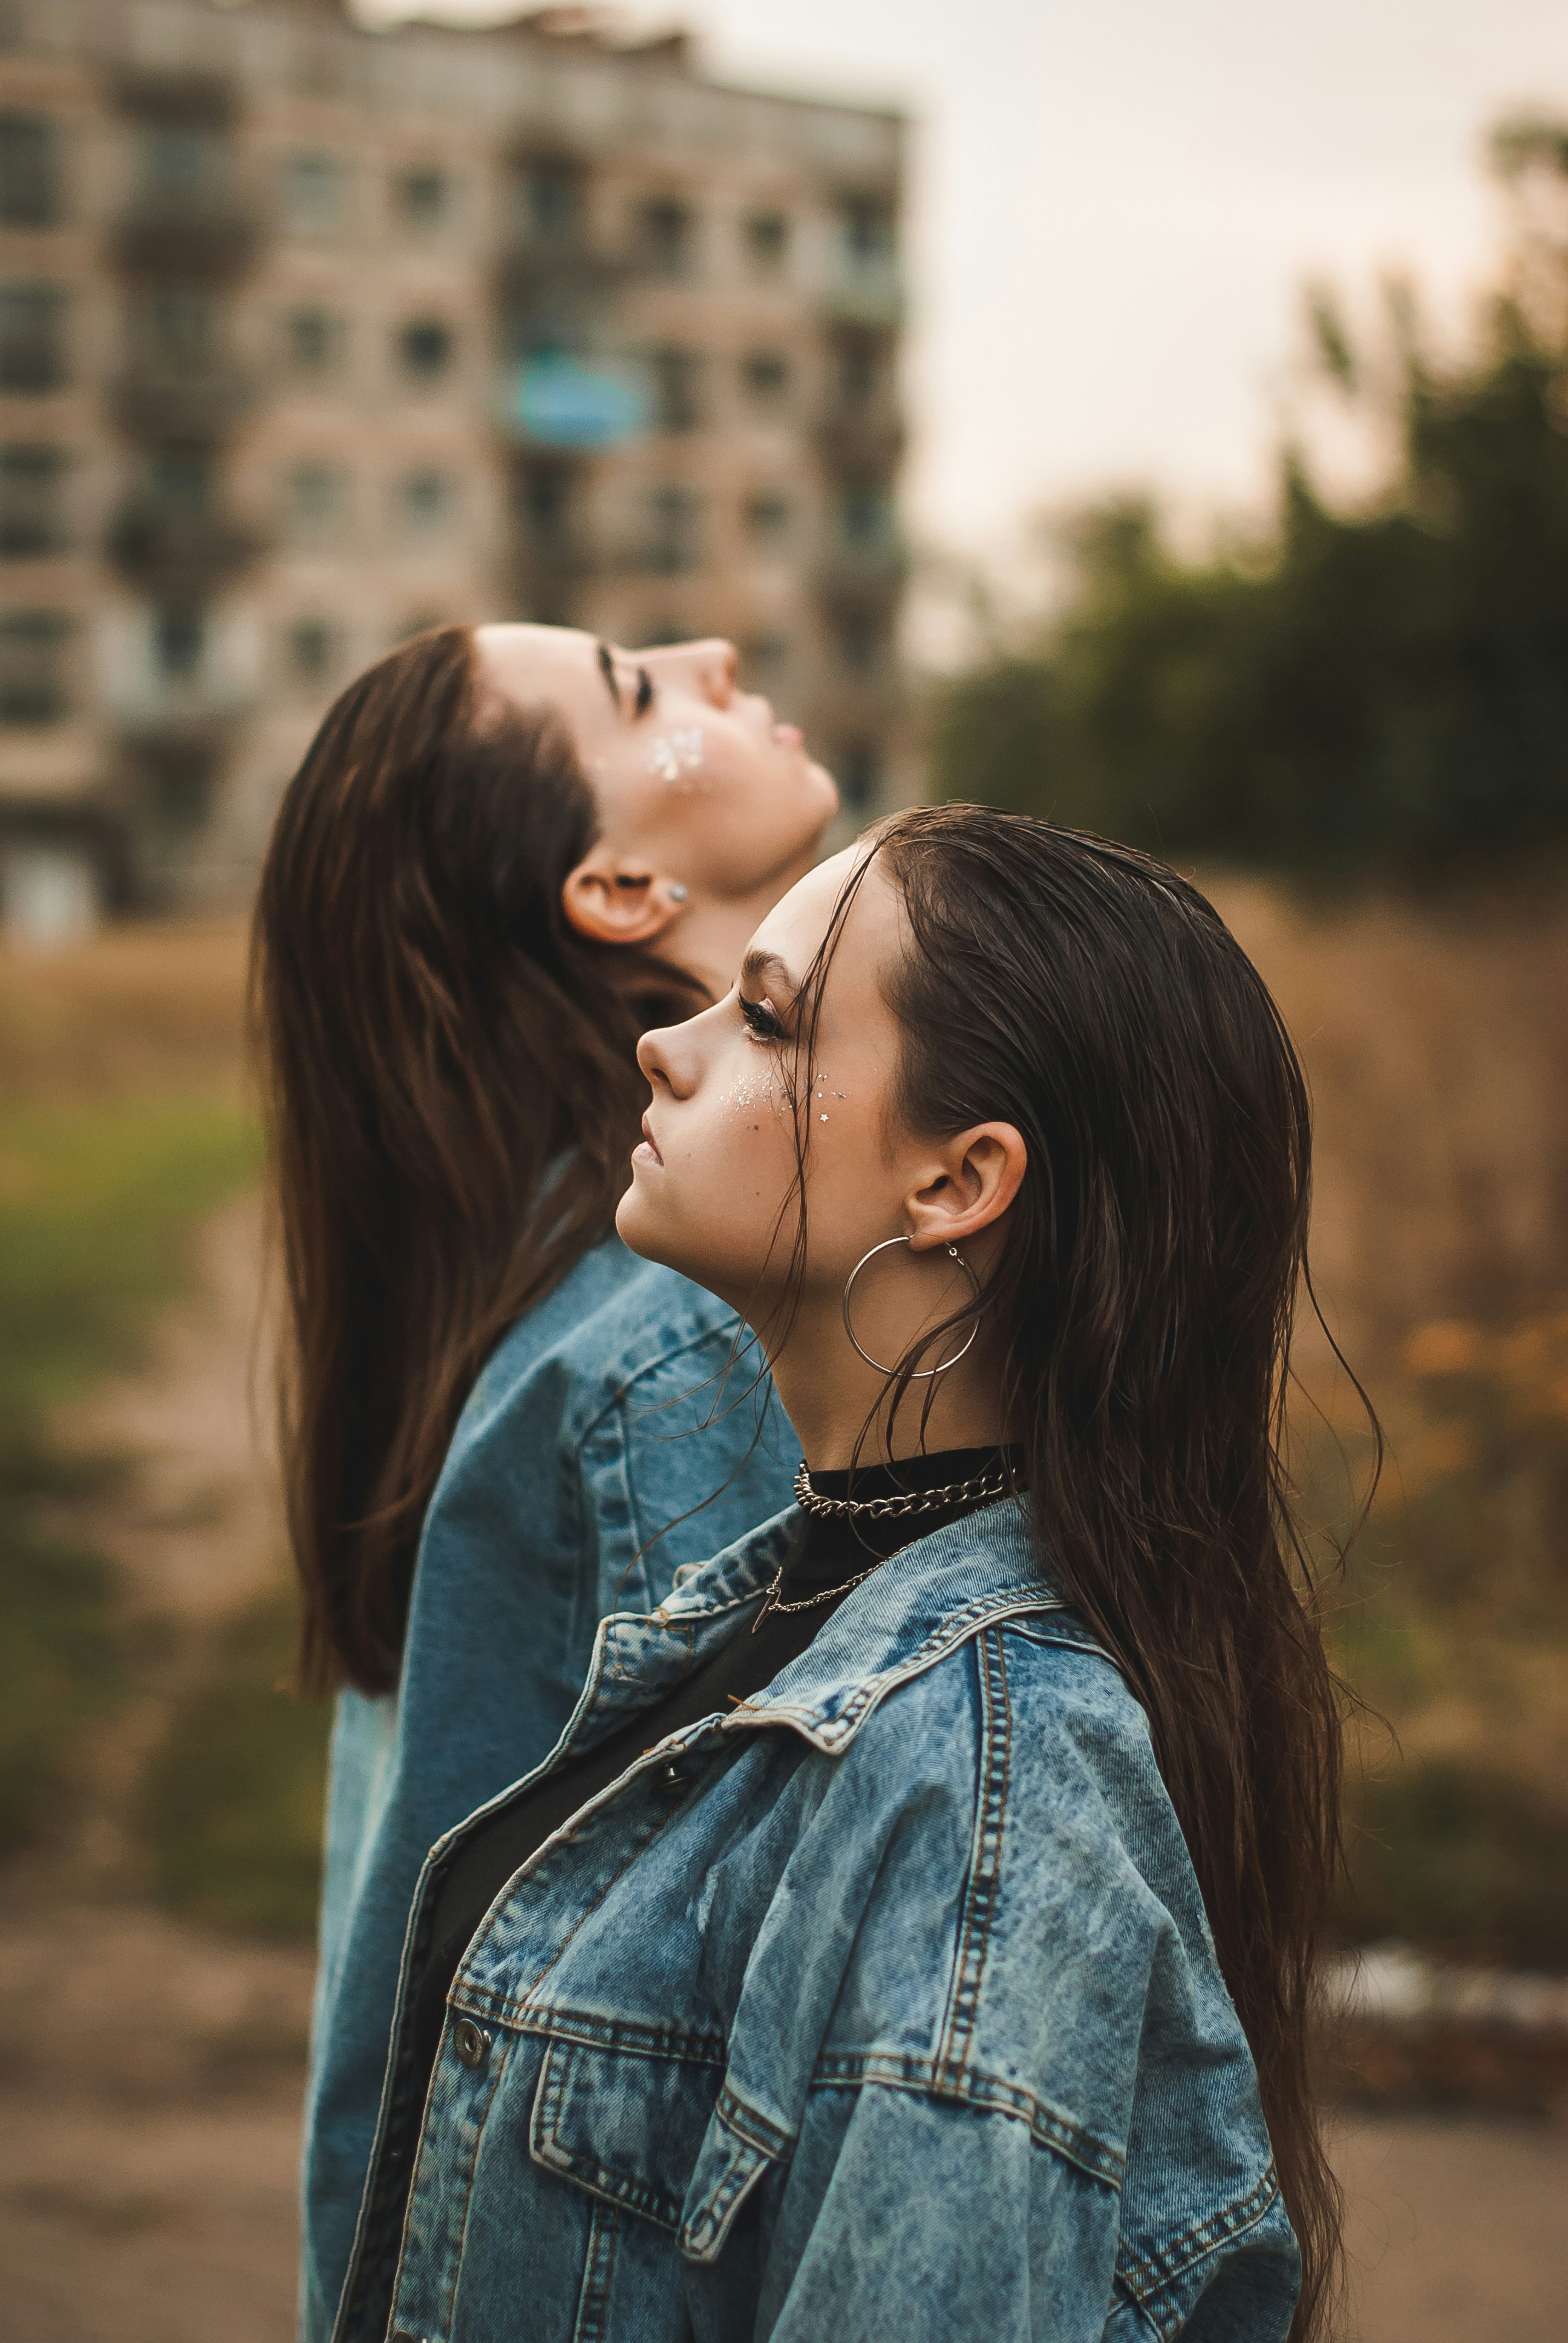 adrian caraan add teen girls kissing tumblr photo